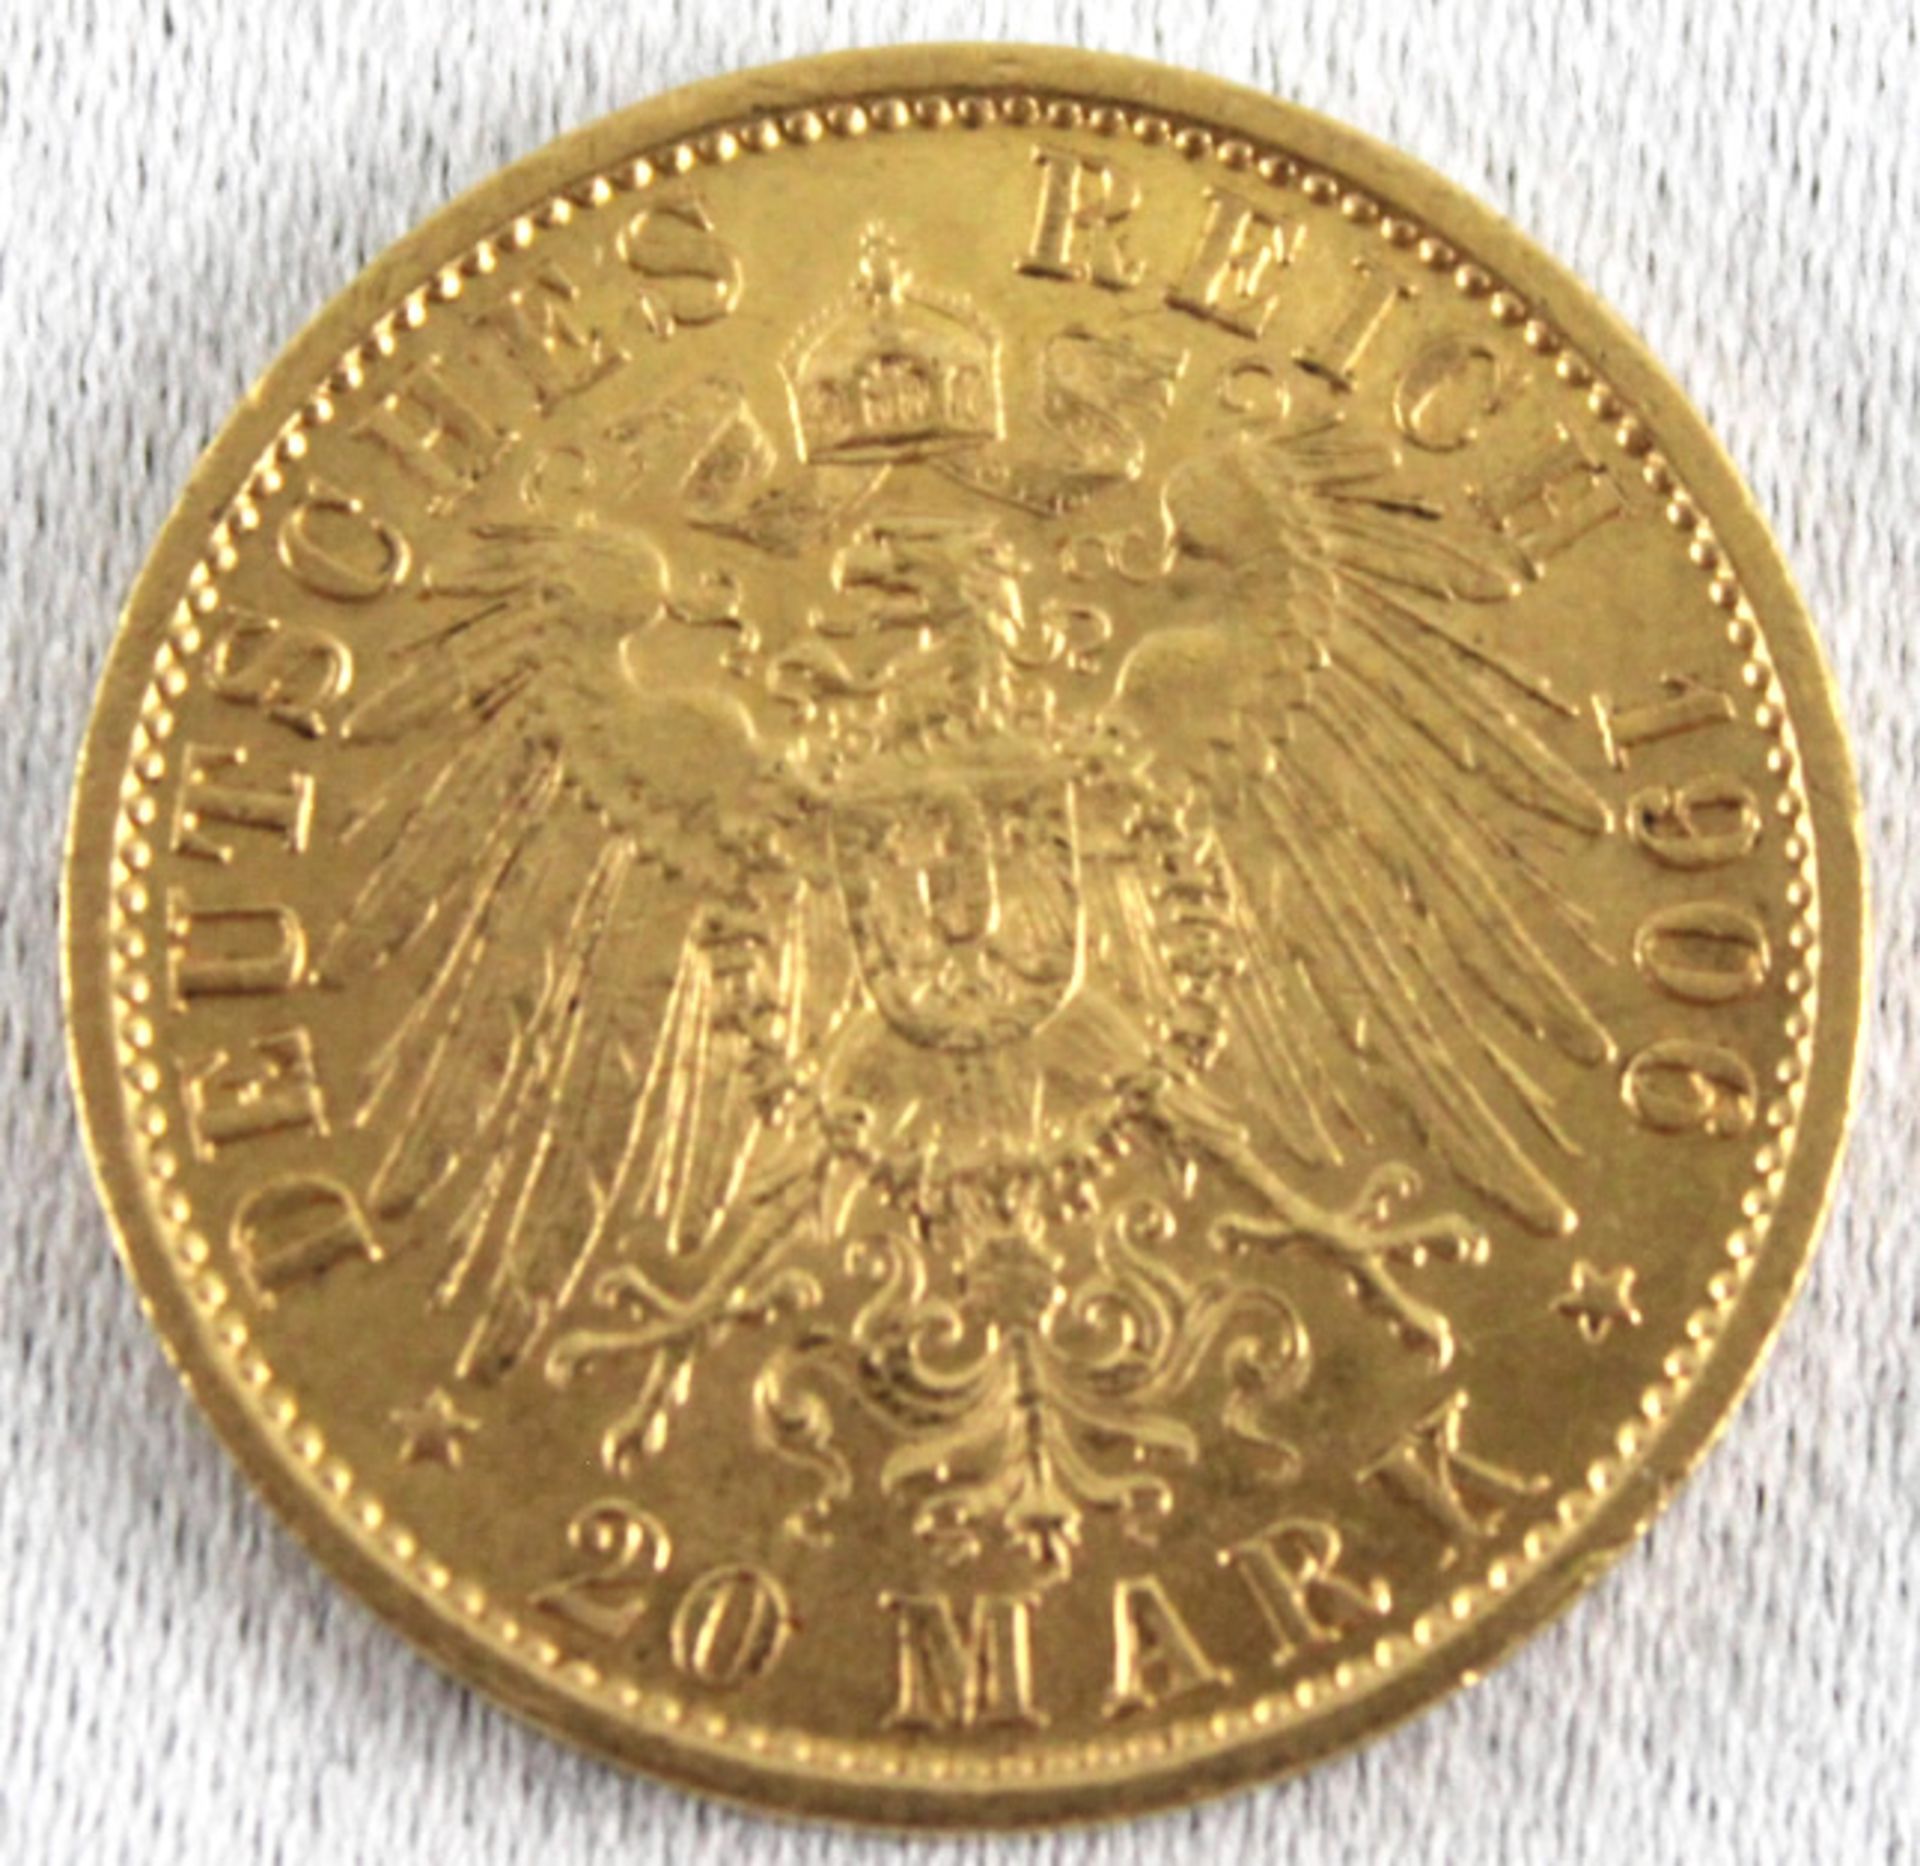 Preussen 20 Mark 1906 A. Kaiser Wilhelm II. (1888-1918) - Deutscher Kaiser, König von Preußen - Image 2 of 2